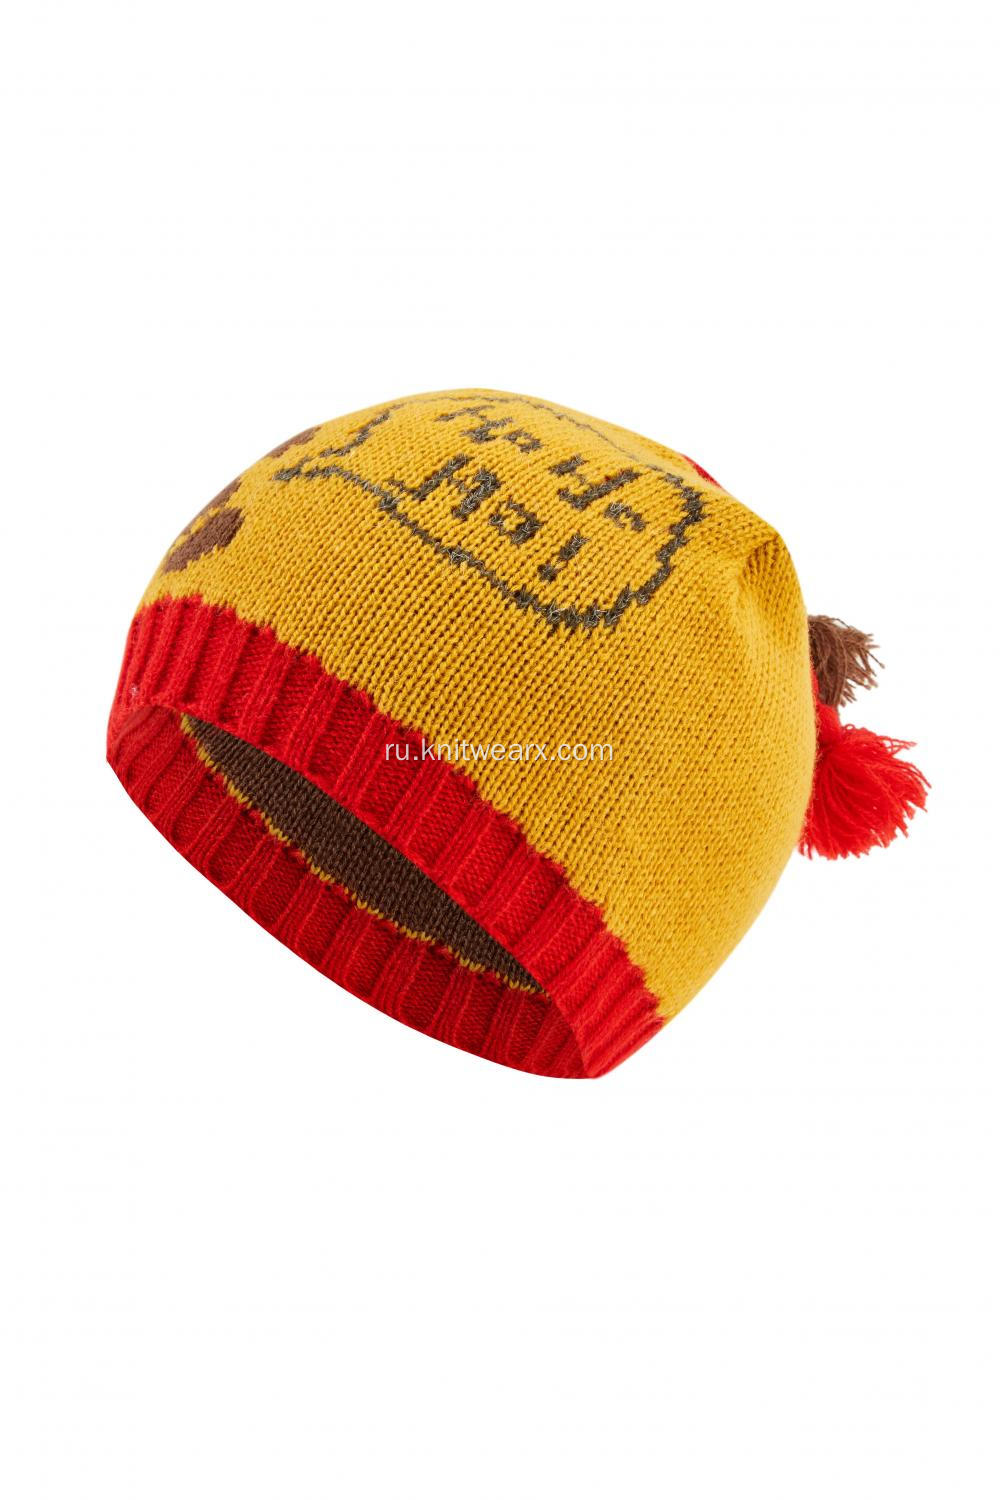 Вязаная шапка-бини из жаккарда с жаккардовыми шариками для мальчиков и девочек